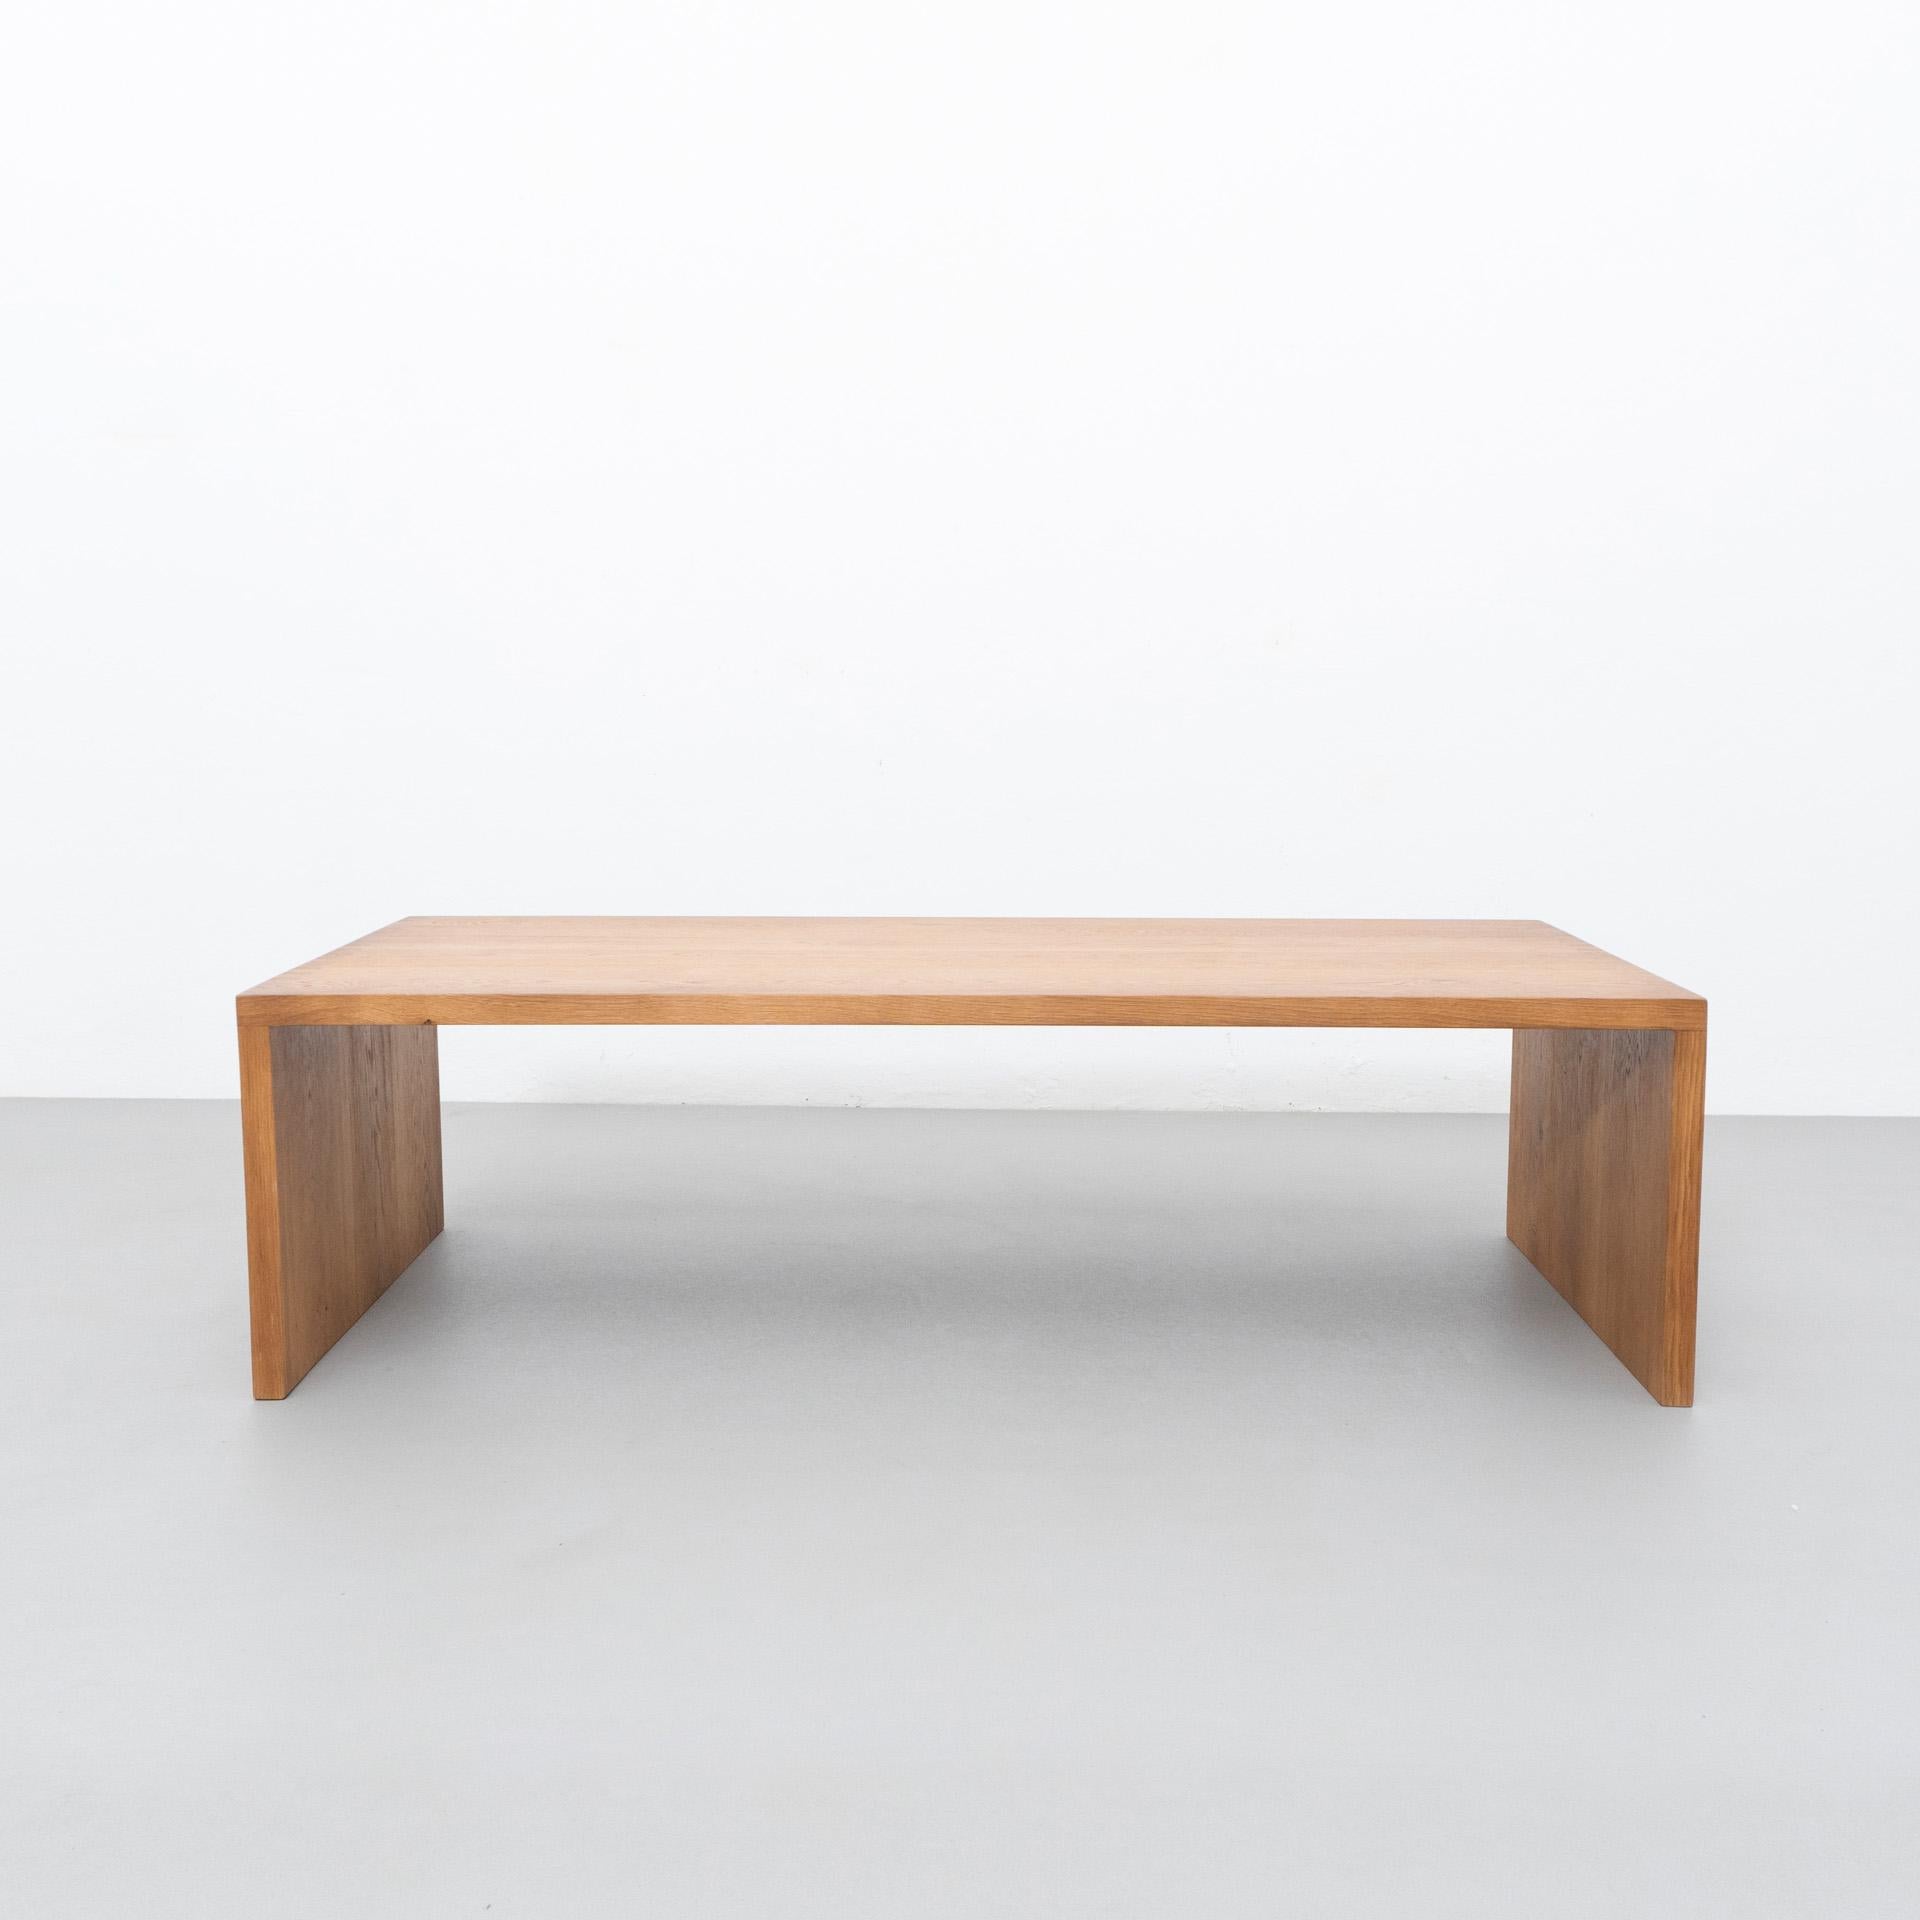 Tisch von DADA Est. hergestellt in Barcelona, 2021.

 Eichenholztisch

Maße: 62 cm T x 140 cm B x 40 cm H 

Es besteht die Möglichkeit, sie in verschiedenen Maßen und Hölzern herzustellen.

DADA Est. Es handelt sich um eine handgefertigte